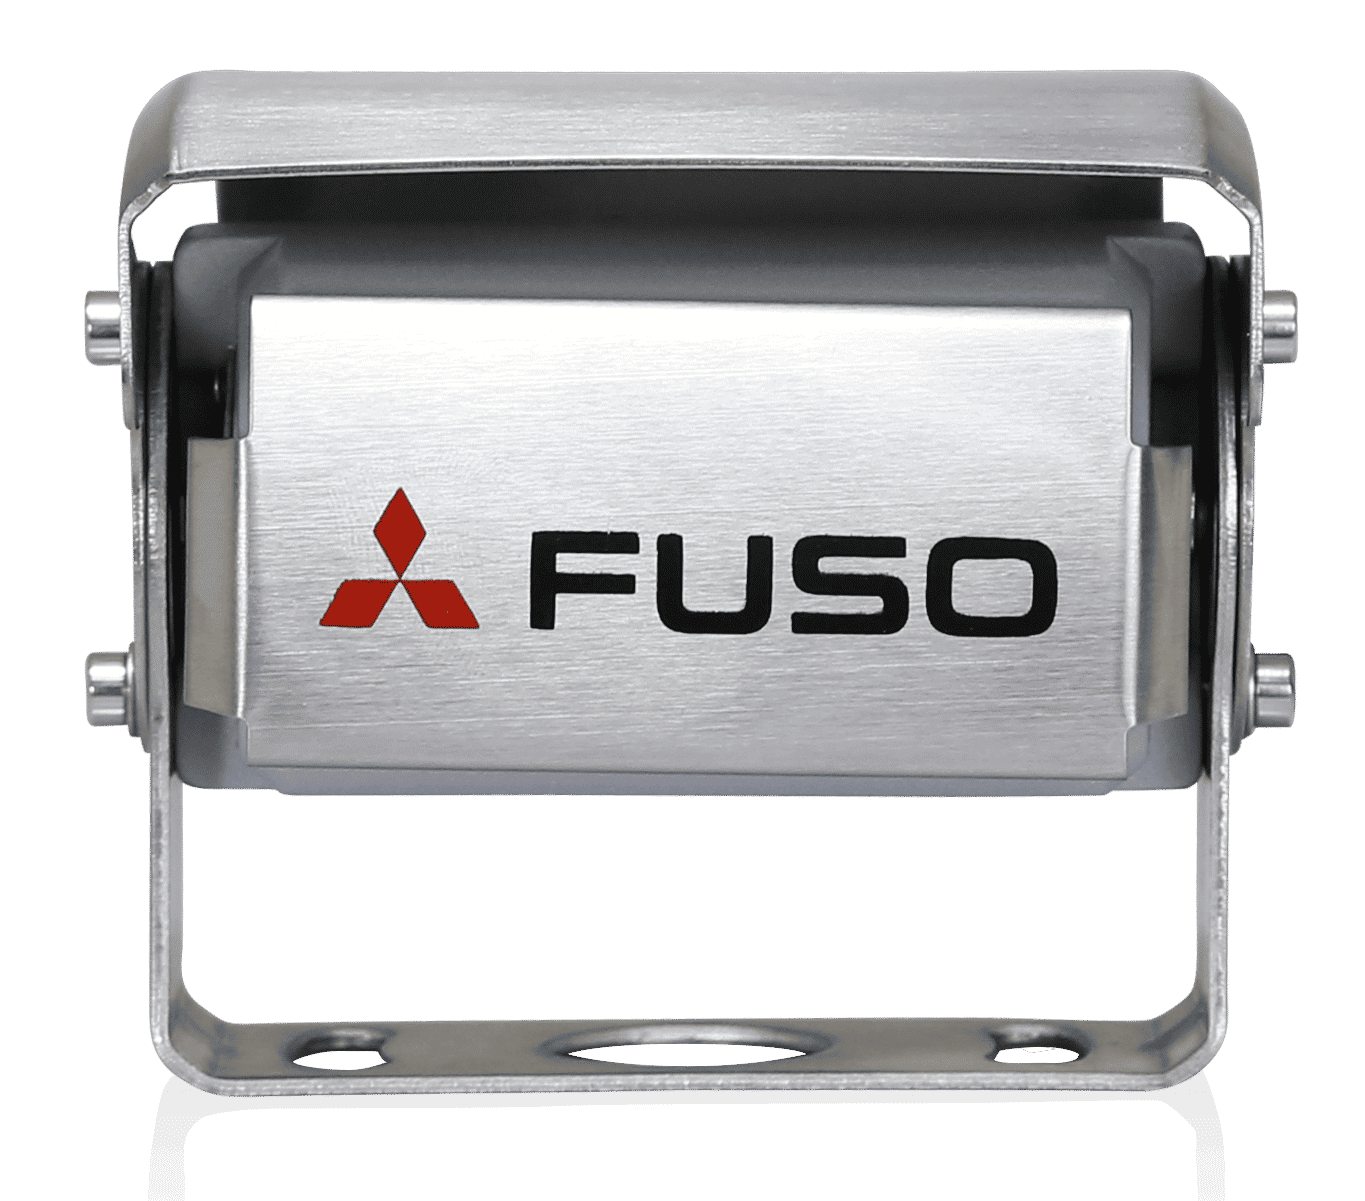 Η κάμερα οπισθοπορείας FUSO είναι ένα προϊόν υψηλής απόδοσης που συνδυάζει τα πλεονεκτήματα της βελτιωμένης ορατότητας και της υψηλής ασφάλειας. Διαθέτει ενσωματωμένο μικρόφωνο που σάς βοηθά να έχετε καλύτερη αντίληψη της περιοχής πίσω από το όχημα. Η οθόνη αλλάζει αυτόματα χρώμα στο σκοτάδι προσφέροντας στον οδηγό τη βέλτιστη δυνατή ορατότητα. Το σύστημα μπορεί να λειτουργήσει με τάση 12 V και 24 V και πληροί τις αυστηρές προδιαγραφές δοκιμών της FUSO. Η κάμερα είναι αδιάβροχη σύμφωνα με το πρότυπο IP69K. Η ανάλυση της οθόνης είναι 800x480x3 (RGB).